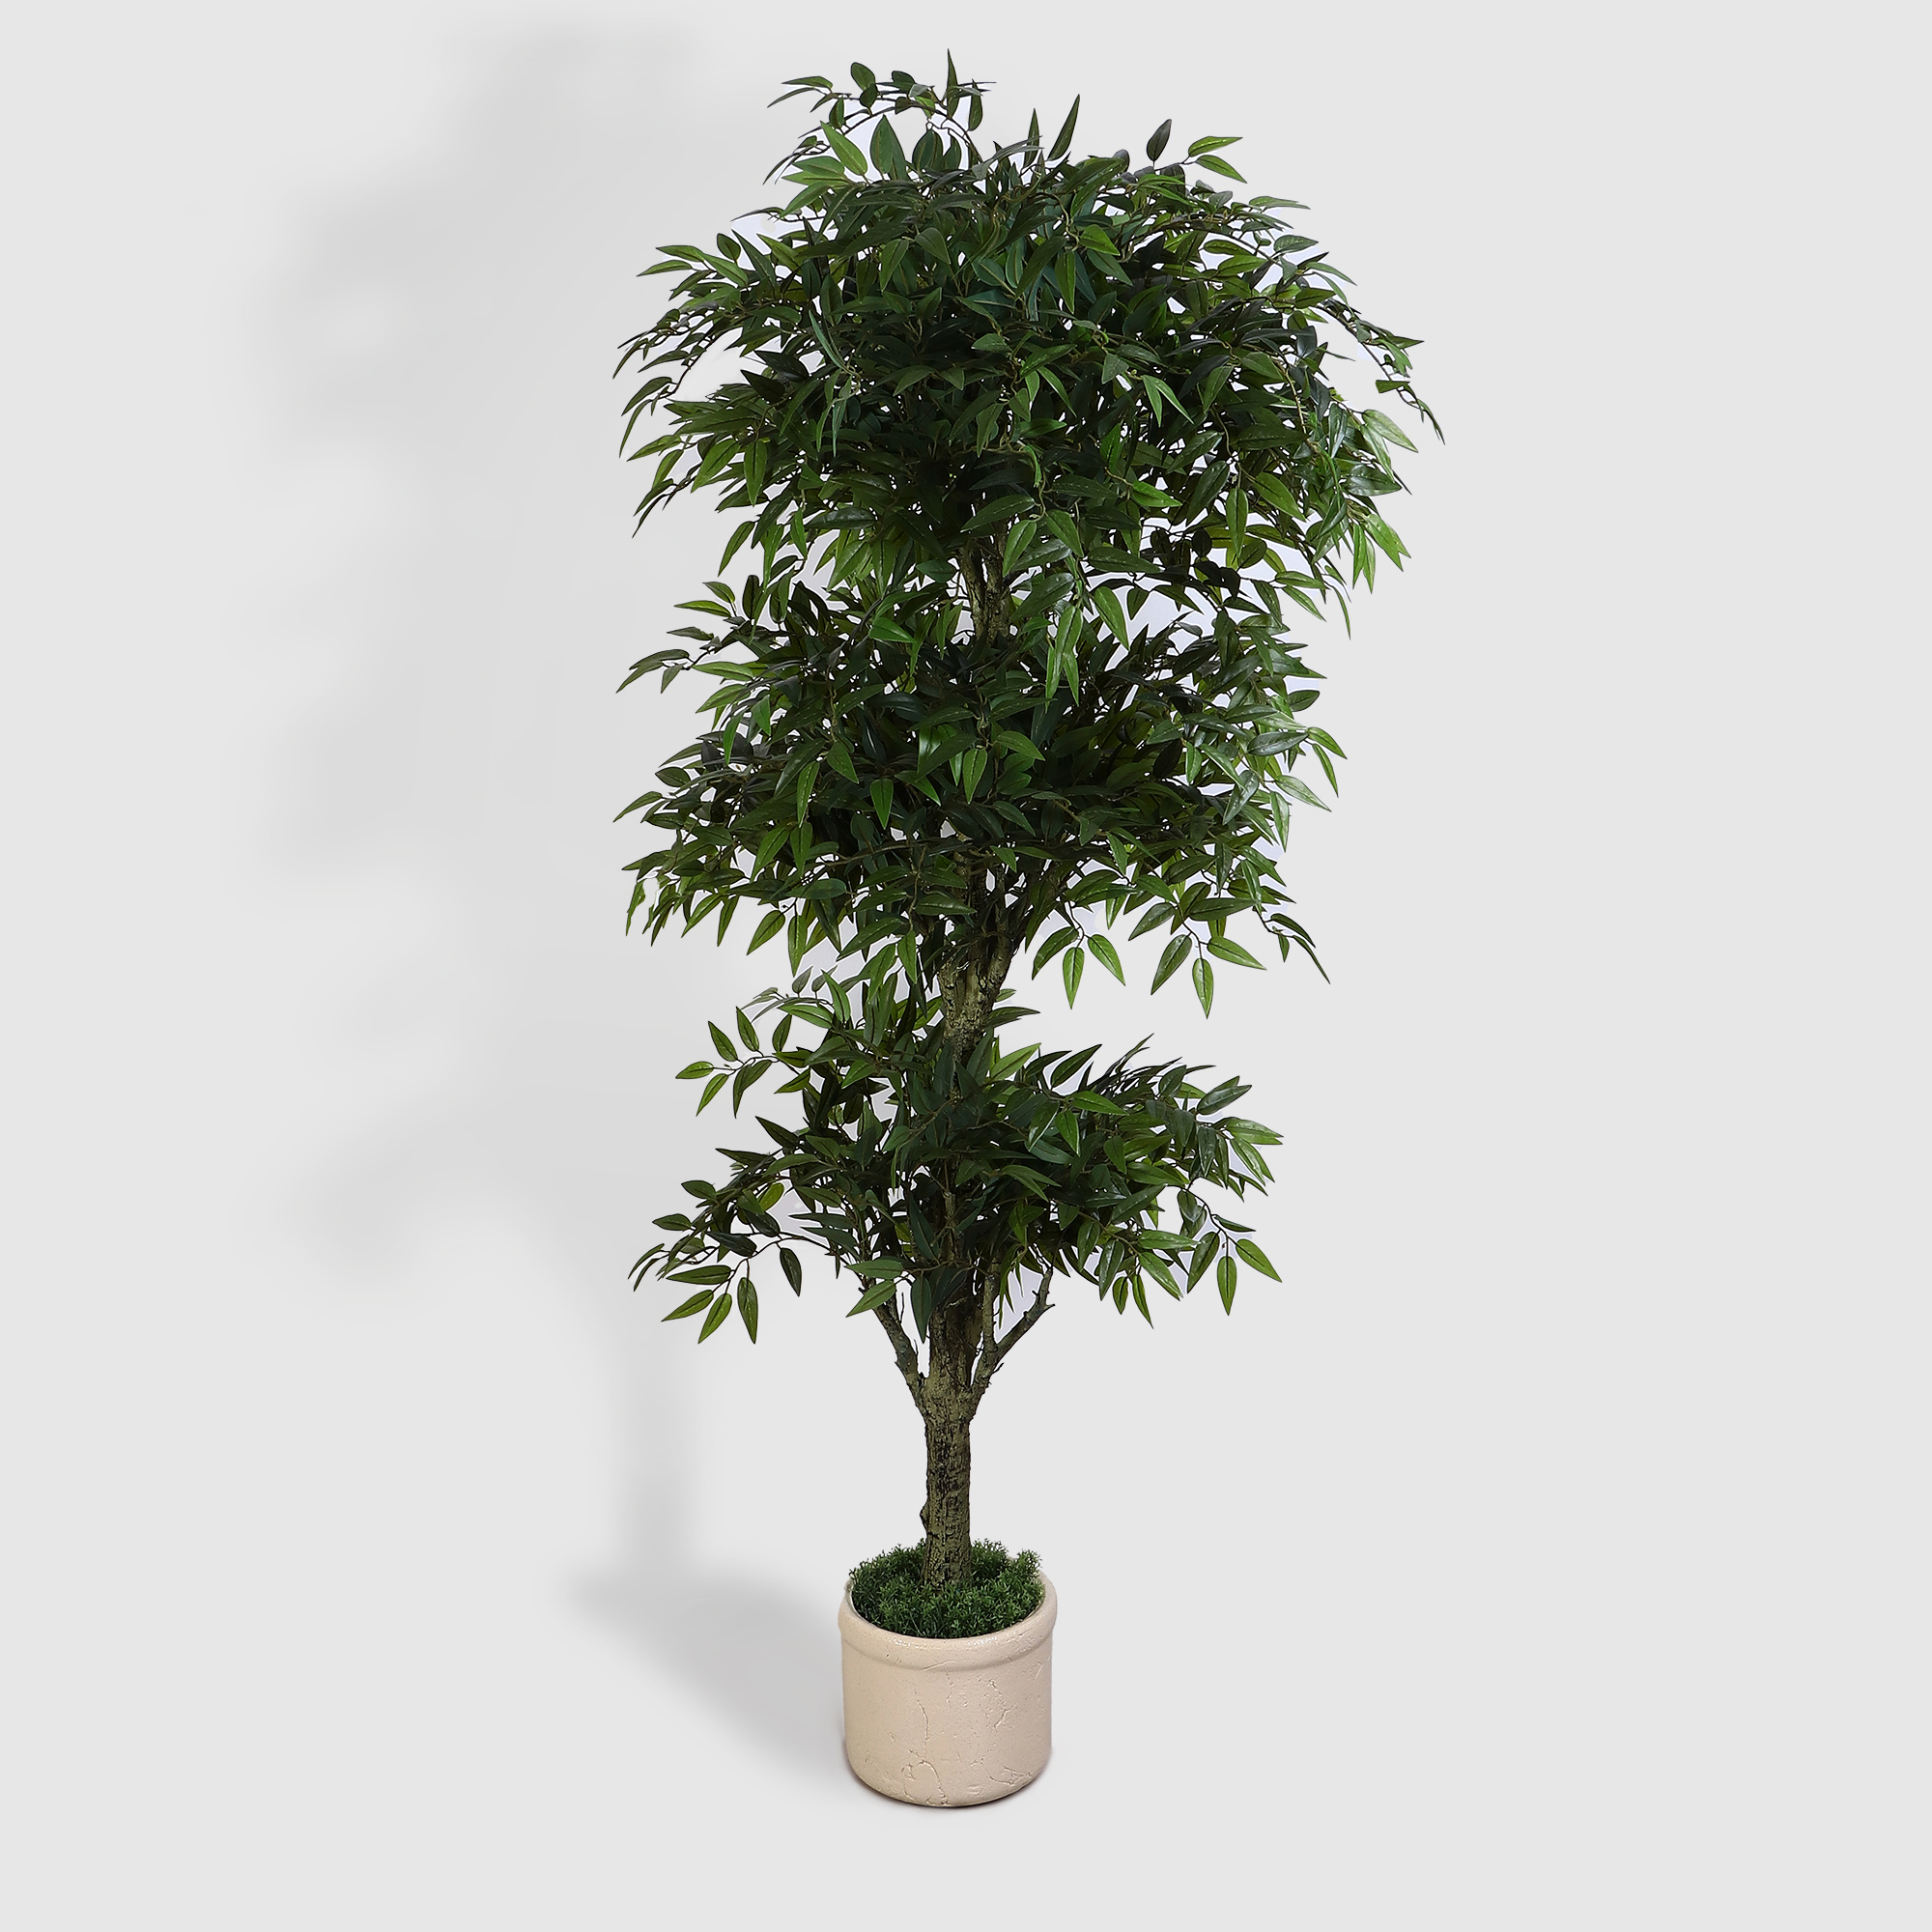 Дерево Конэко-О искусственное зеленое дерево фигурное конэко о